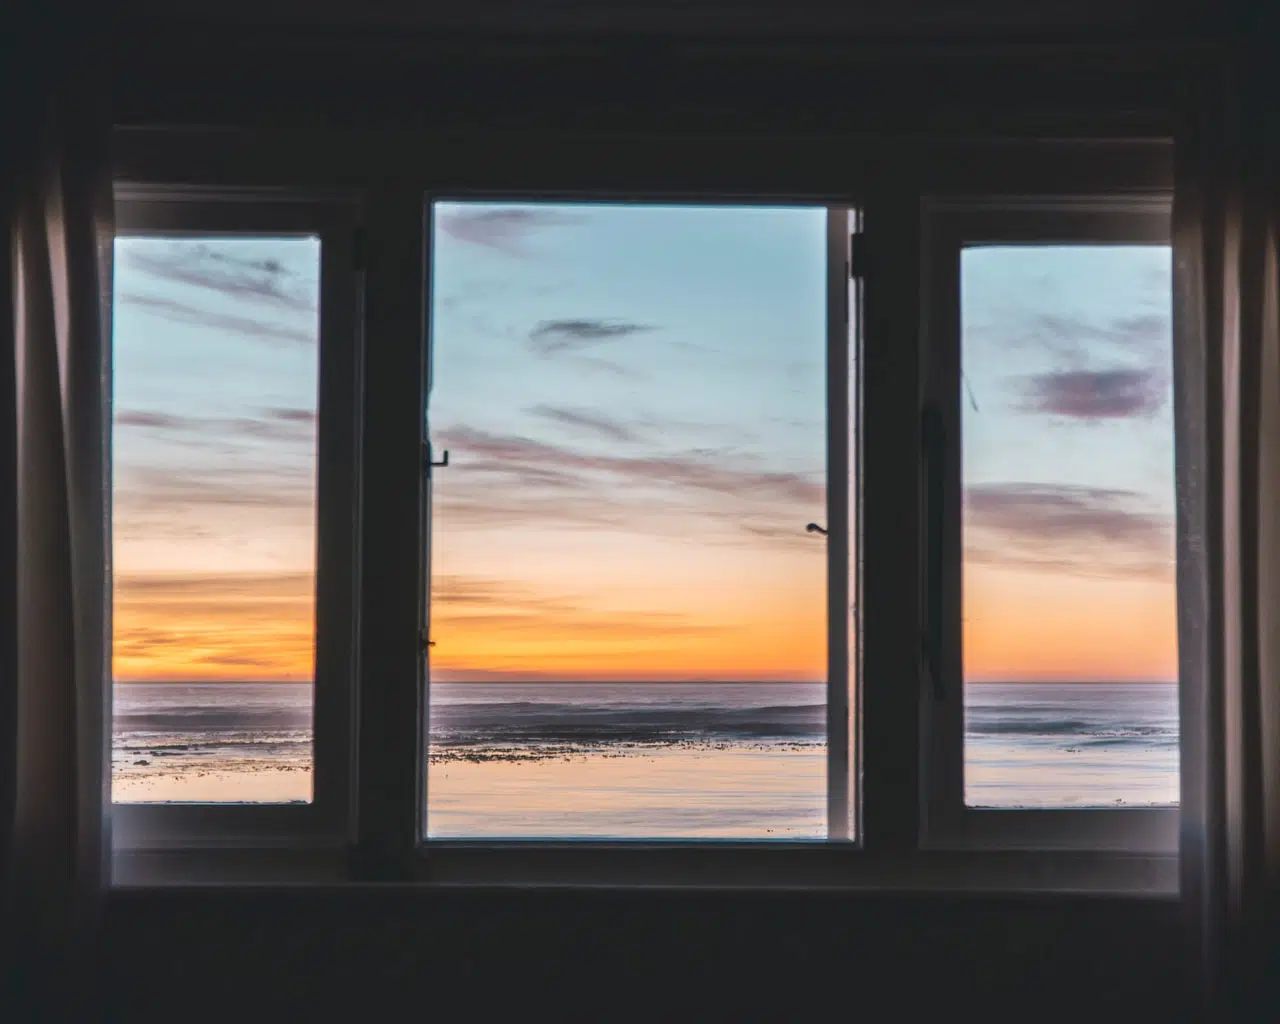 Polerowanie szyb okiennych – czy da się naprawić szybę w oknie? 1